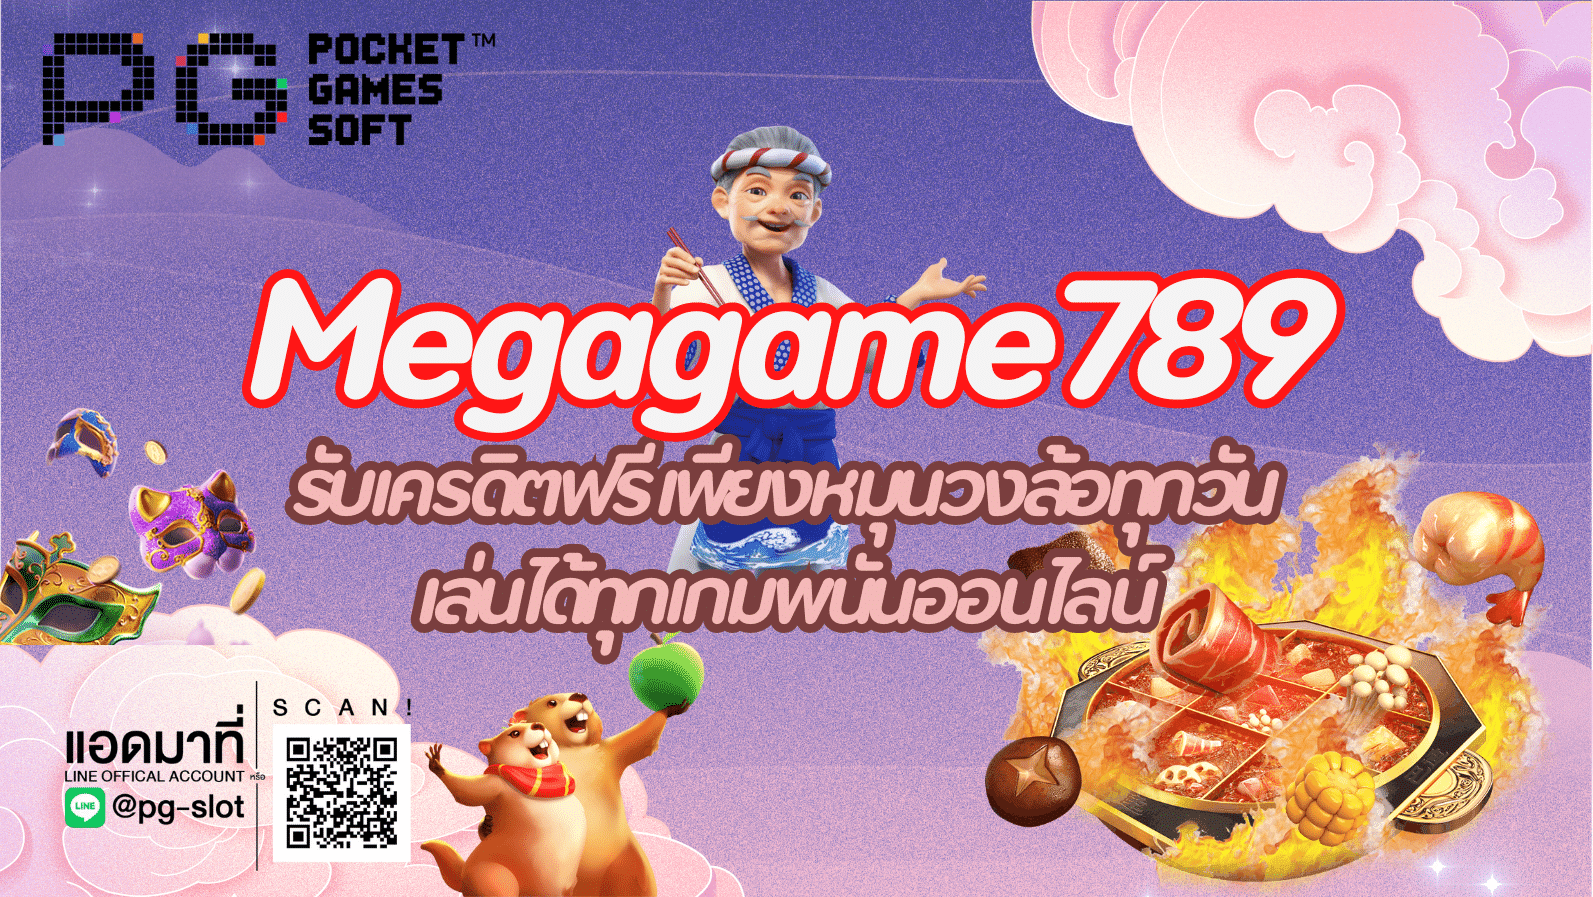 Megagame789